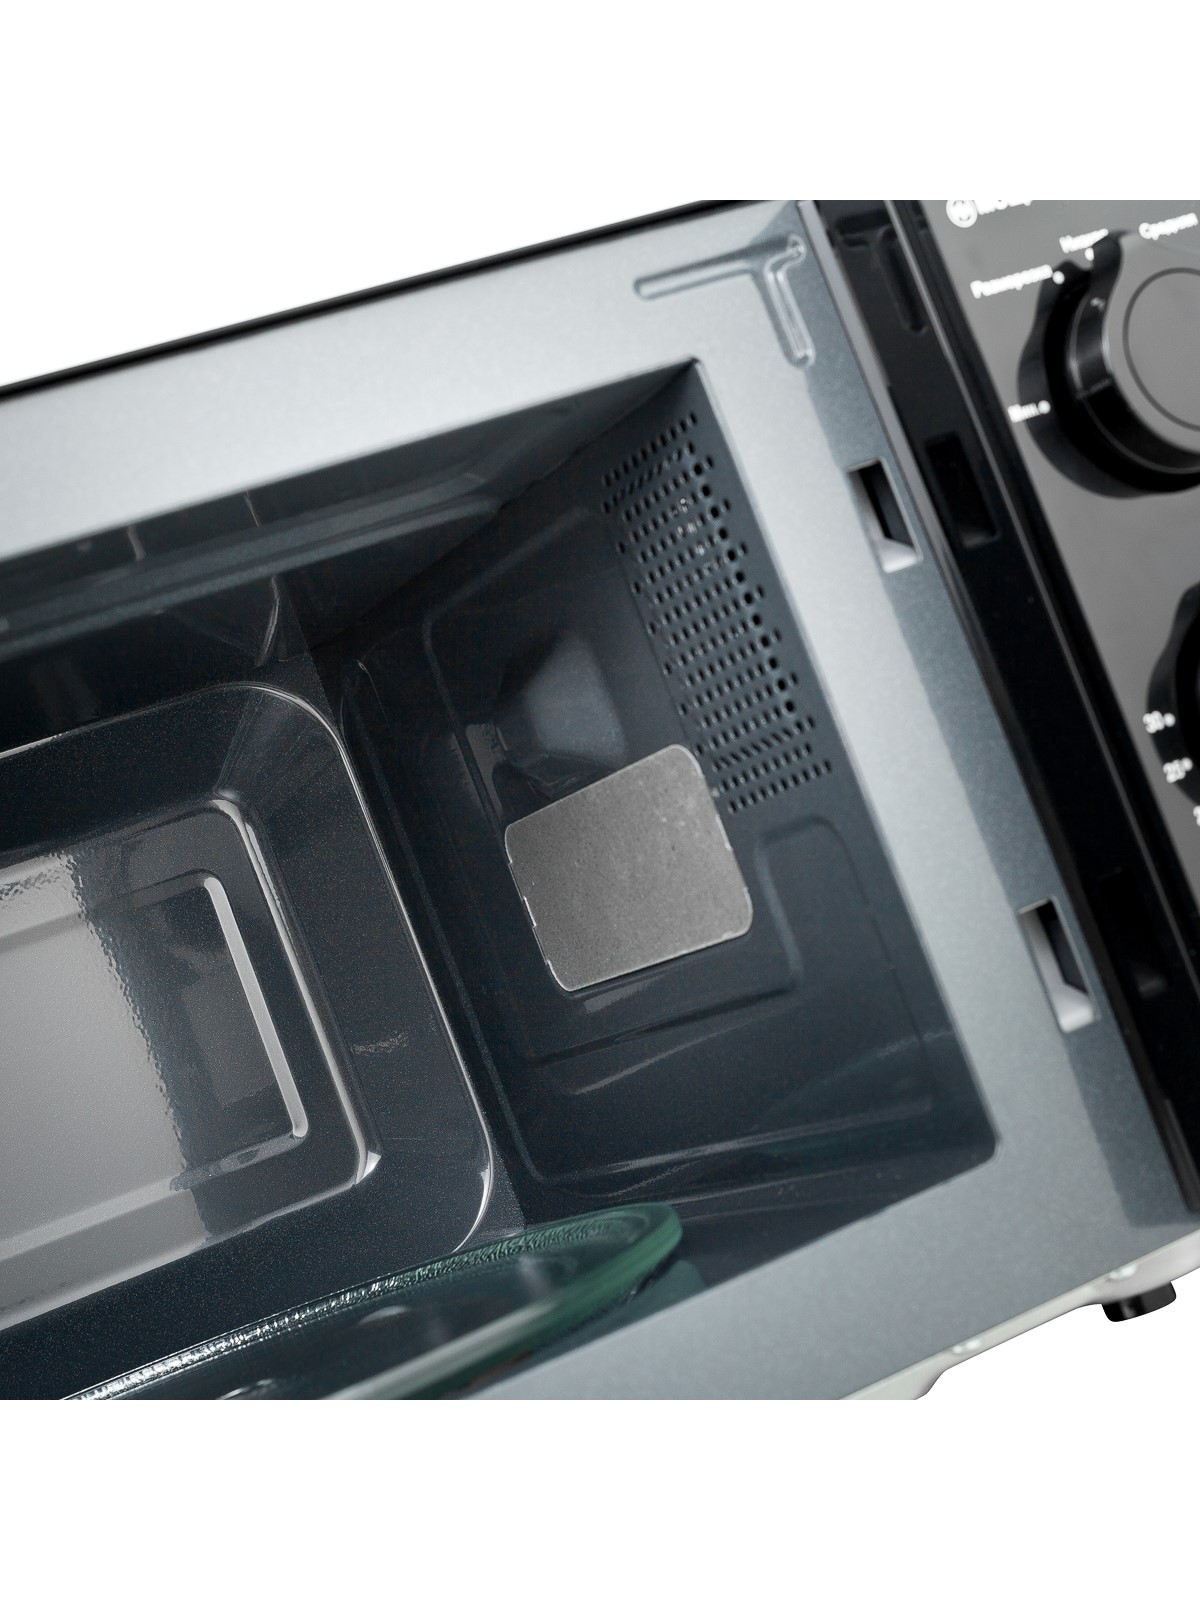 Микроволновая печь BRAYER BR2500 – характеристики, подробные описание и .